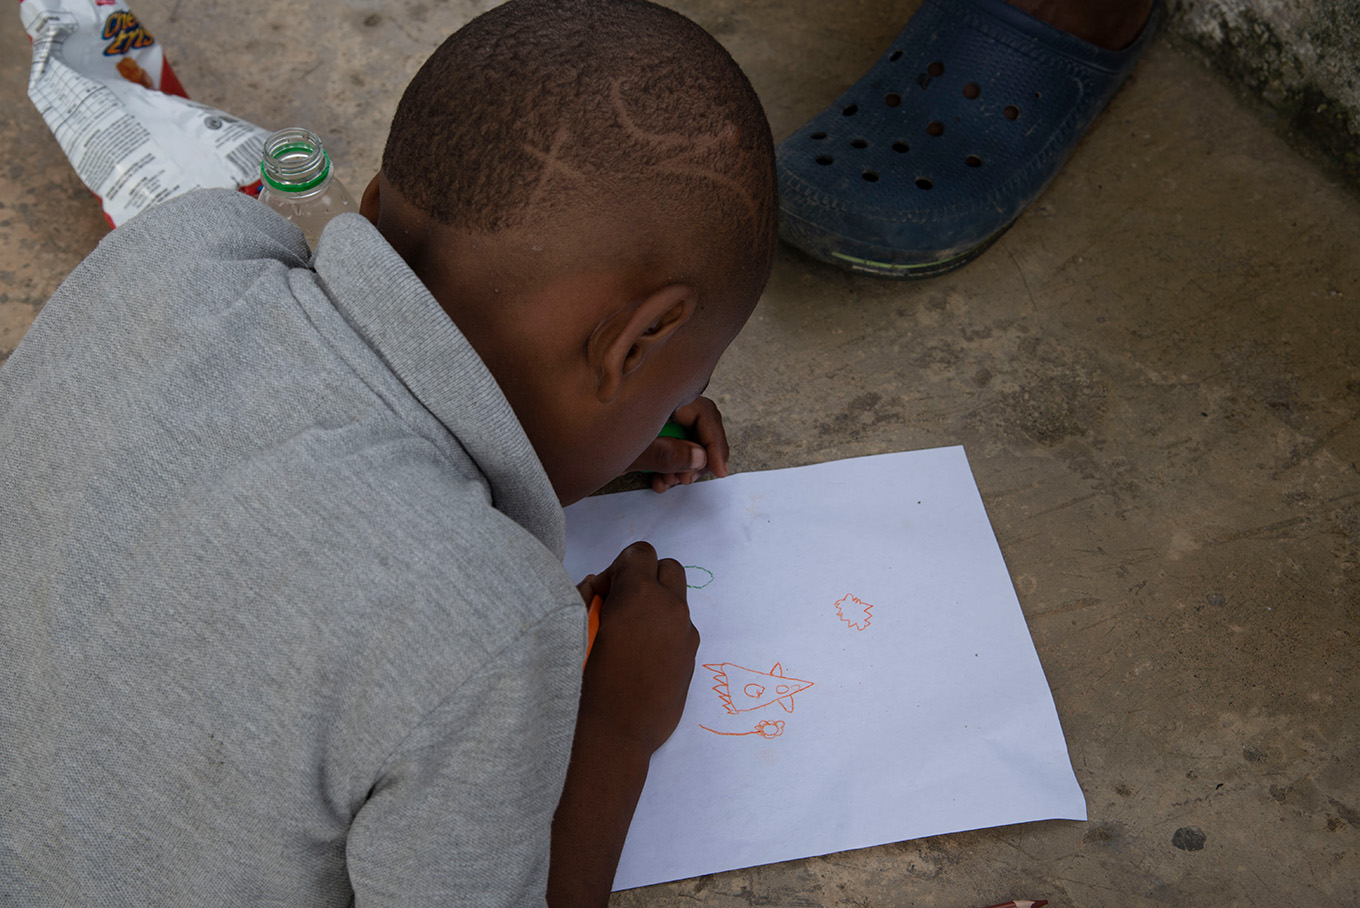 Además de leer y escuchar relatos, los niños y niñas también participaron dibujando. Foto: Andrés Correa, CNMH